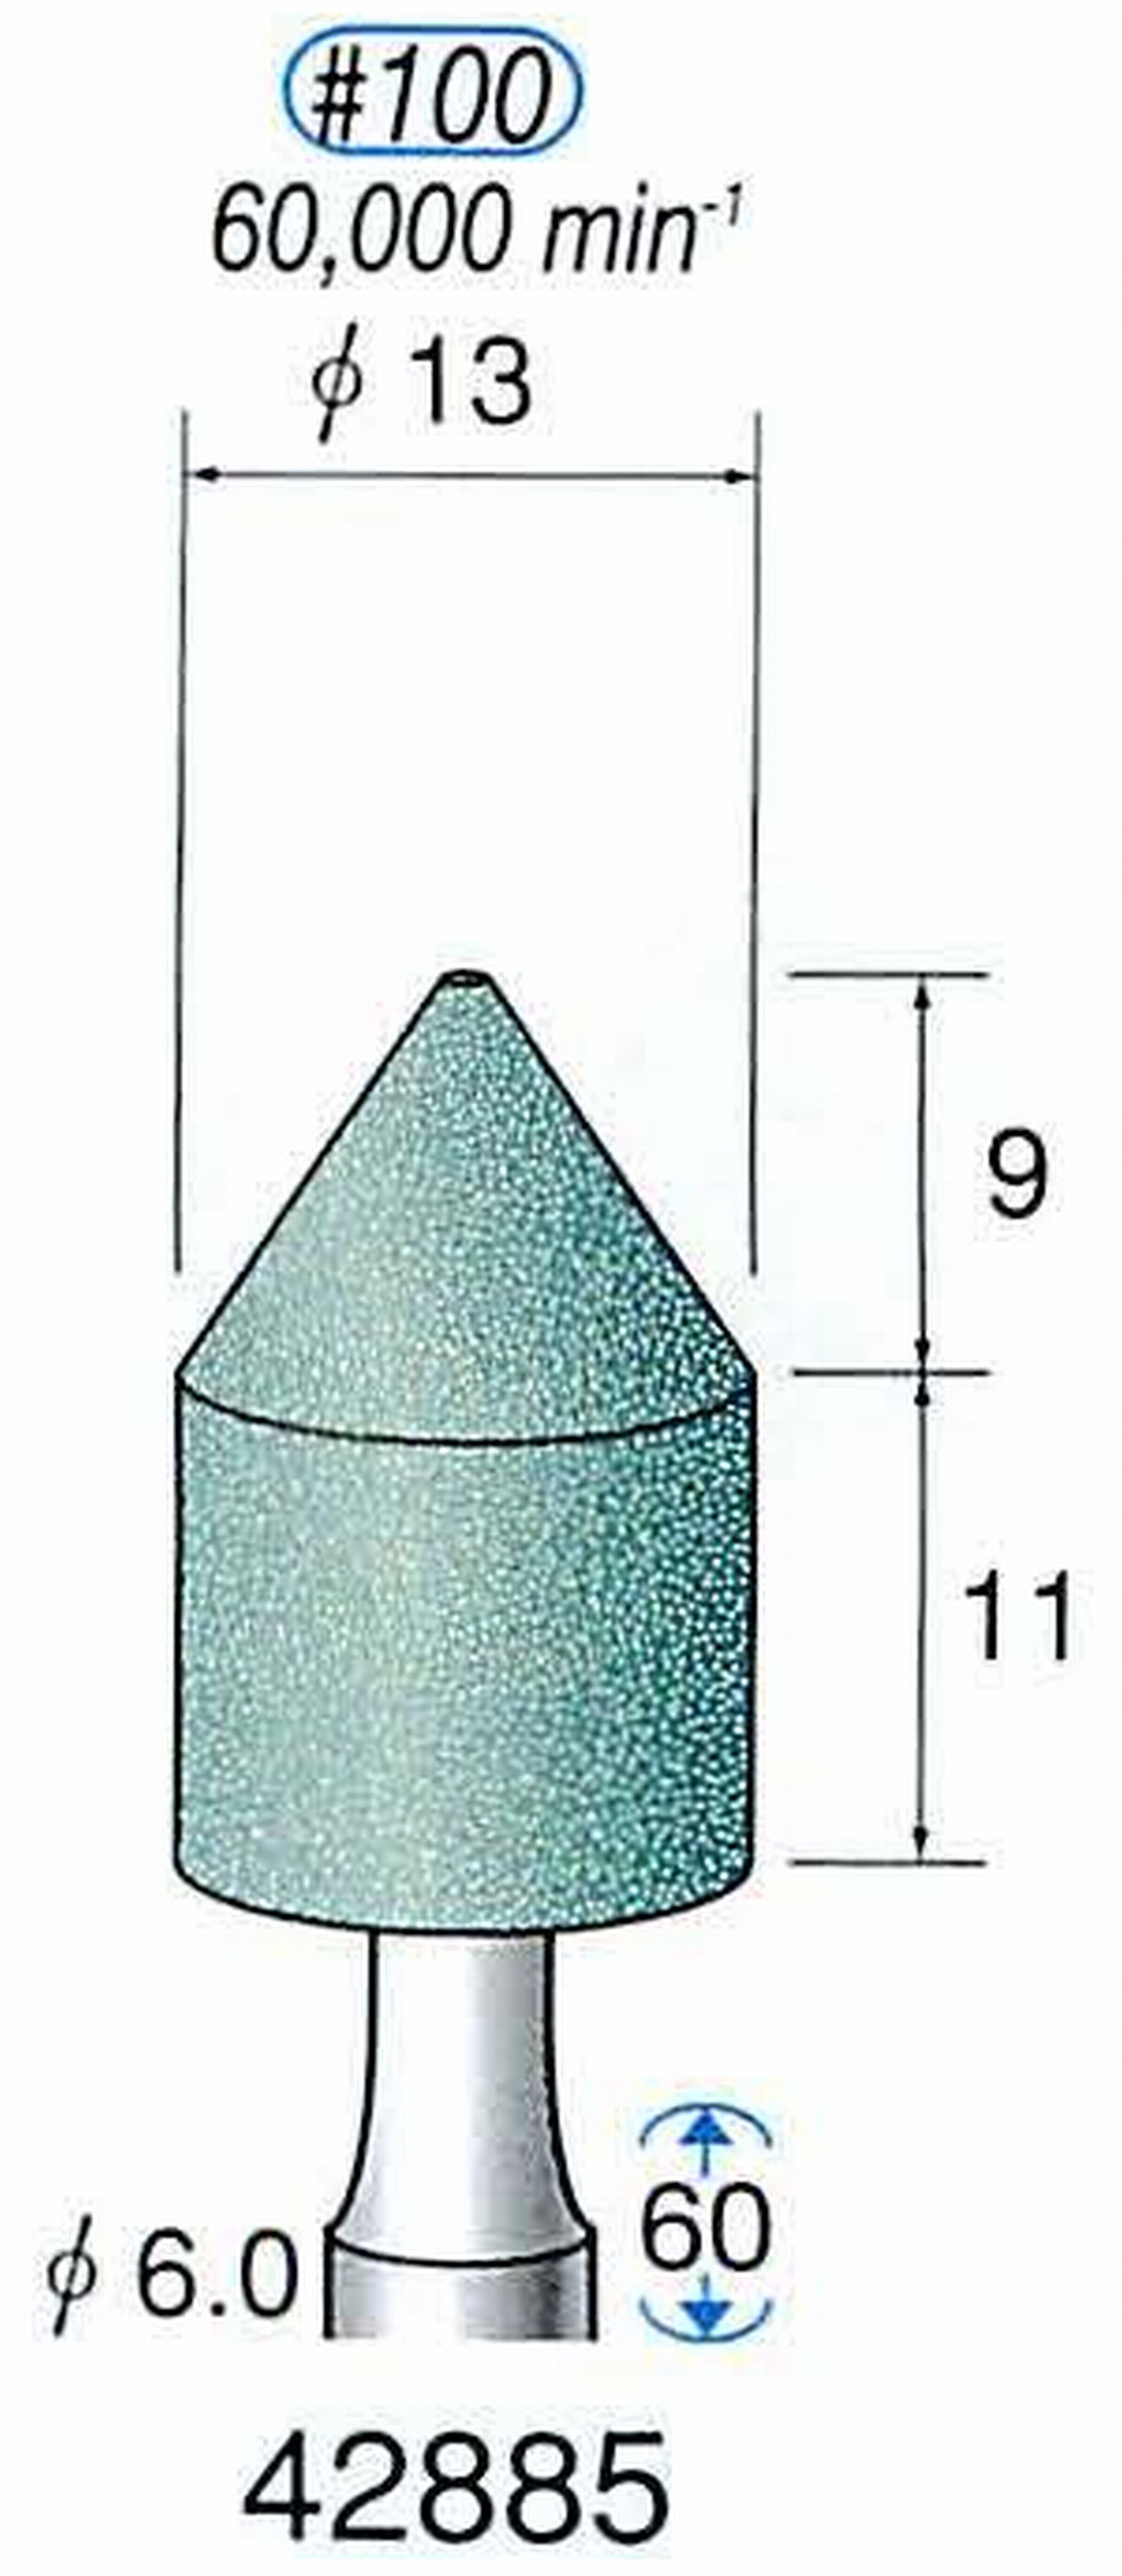 ナカニシ/NAKANISHI 軸付砥石(GC砥粒) 軸径(シャンク) φ6.0mm 42885